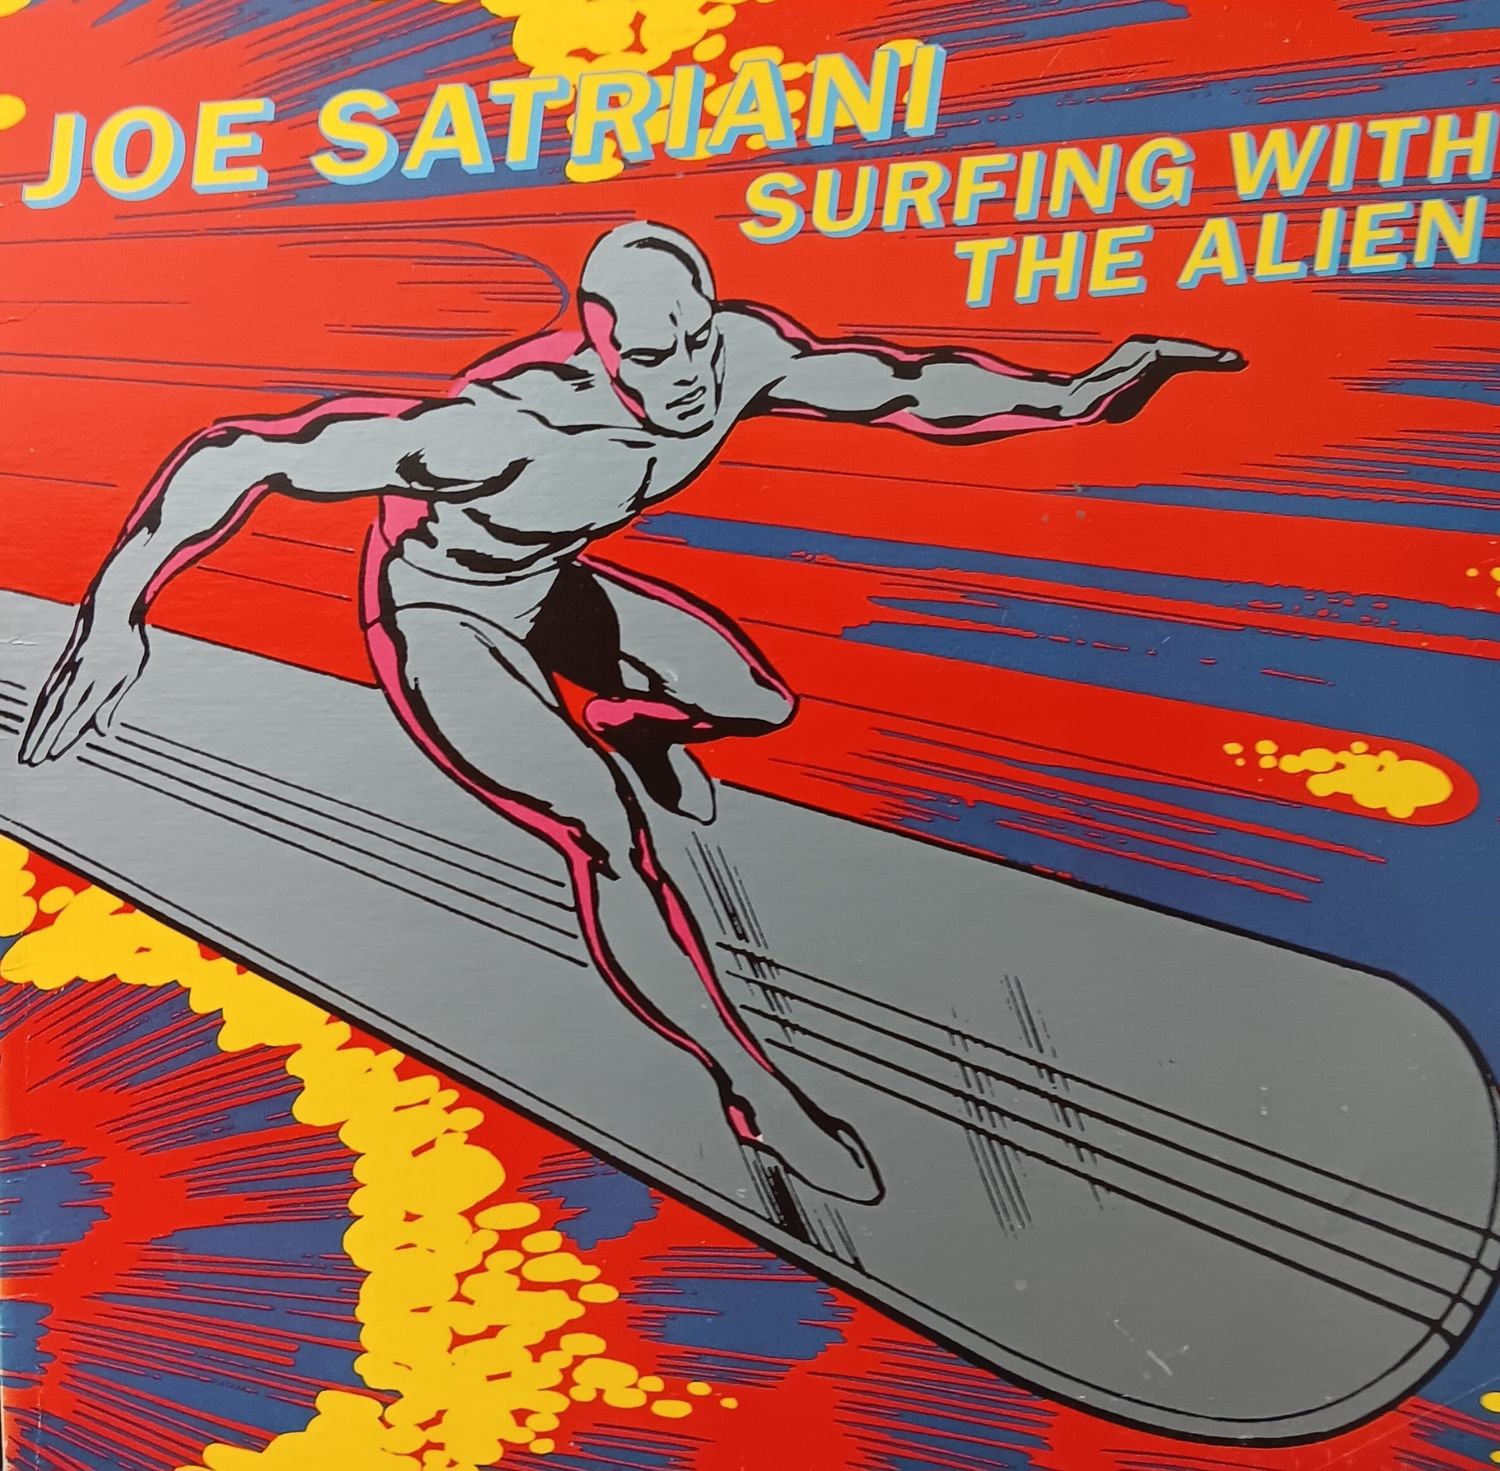 JOE SATRIANI - Surfing with the alien